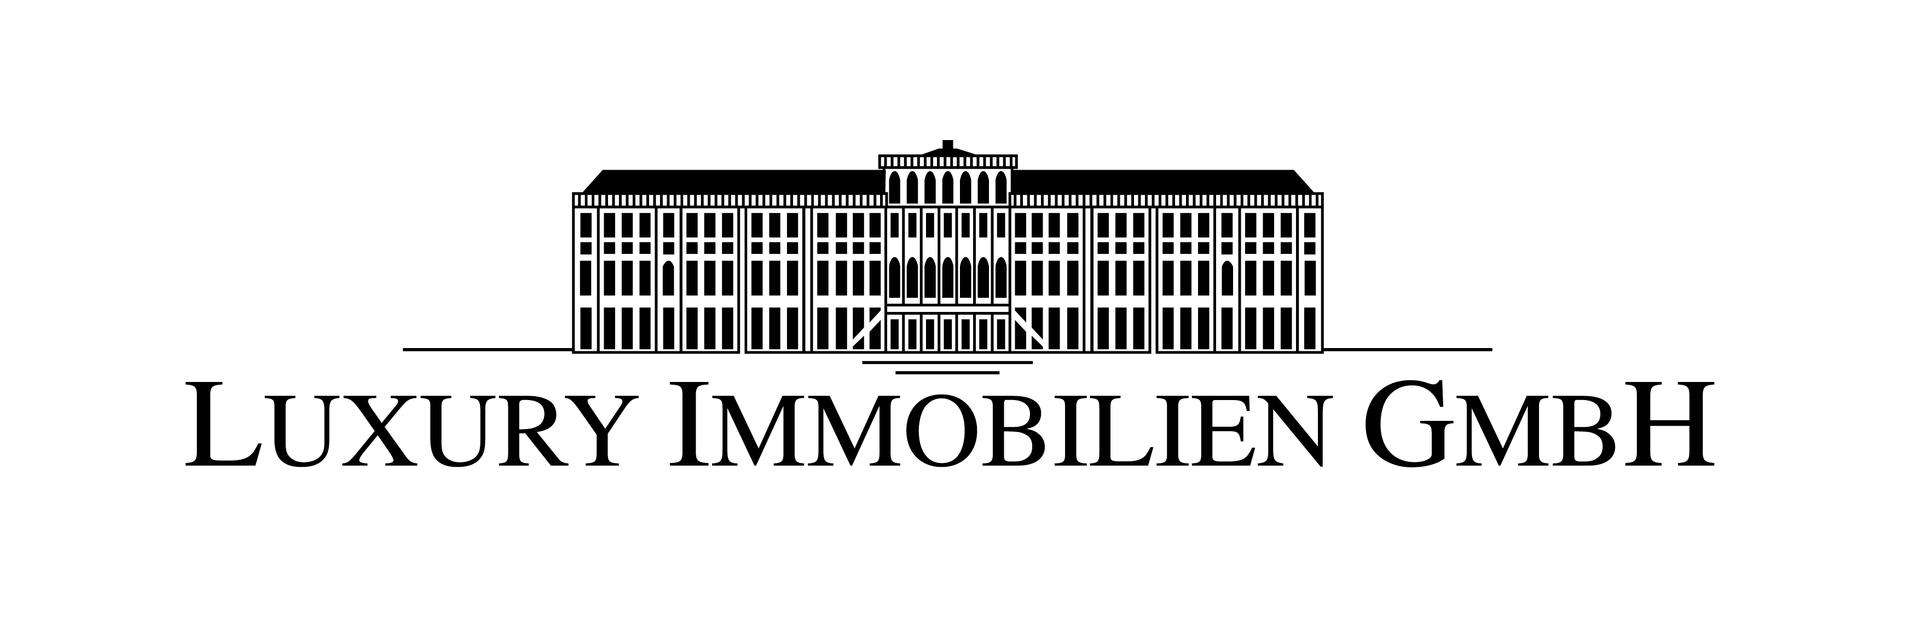 Makler Luxury Immobilien GmbH logo